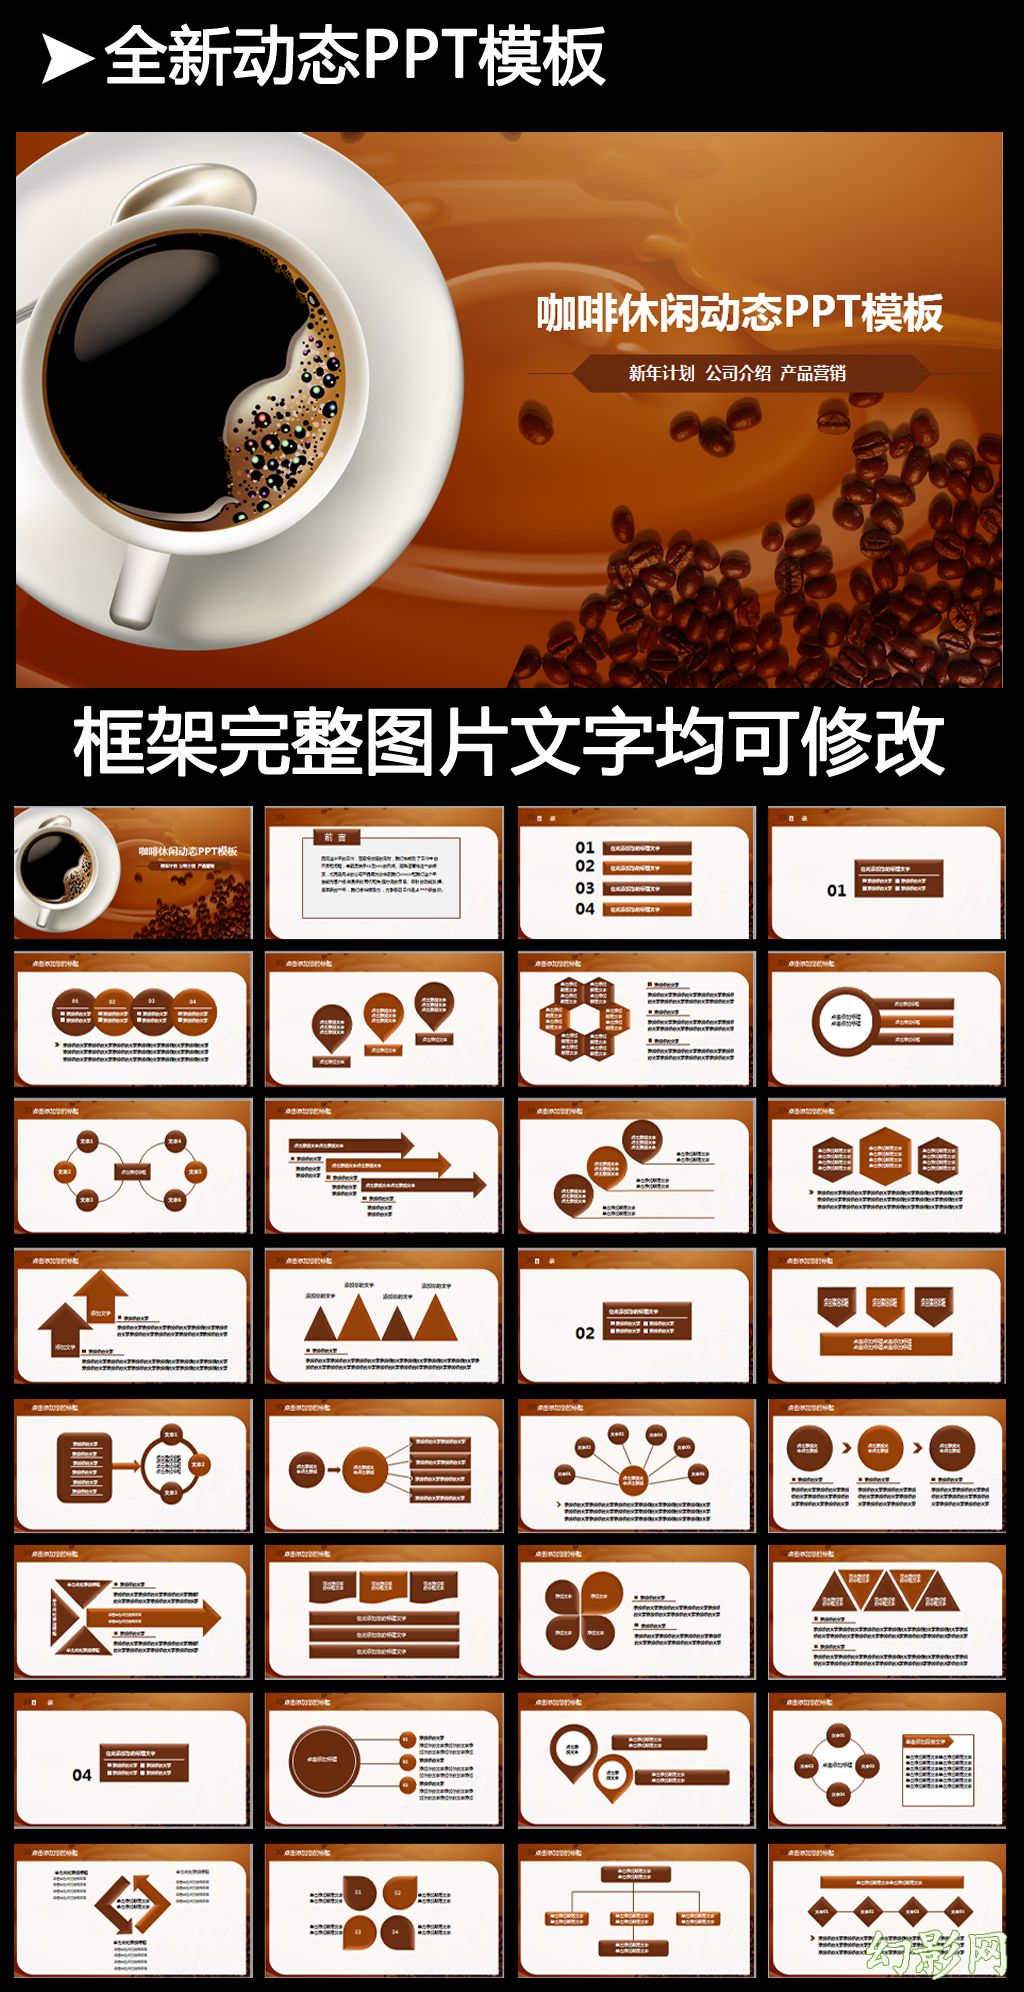 高清咖啡产品介绍下午茶咖啡厅PPT模版